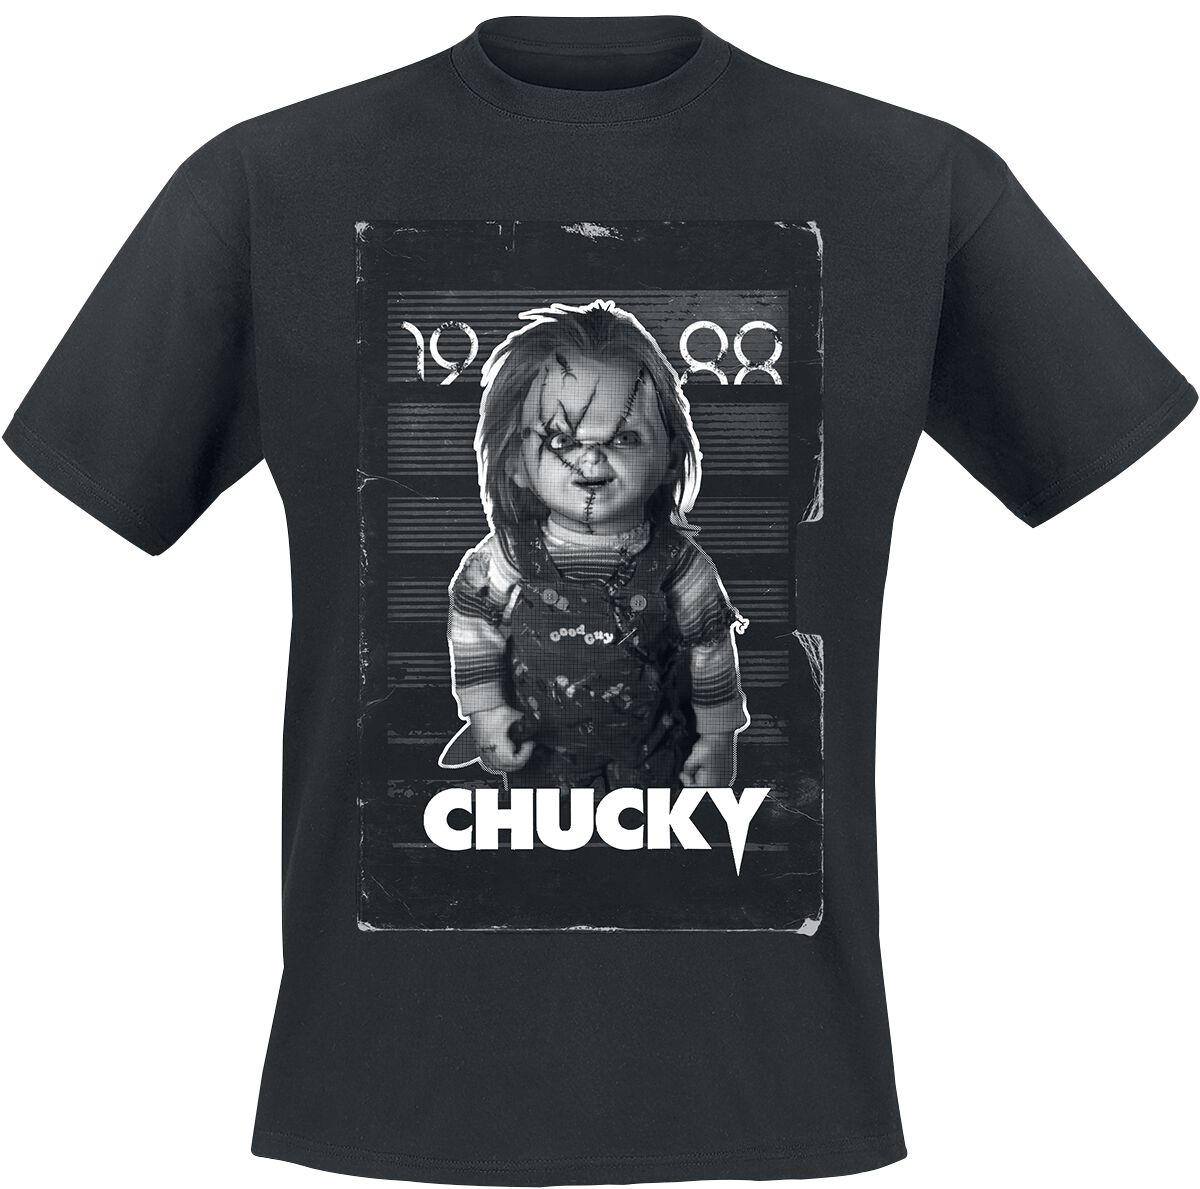 Chucky T-Shirt - VHS Cover - S bis L - für Männer - Größe M - schwarz  - Lizenzierter Fanartikel